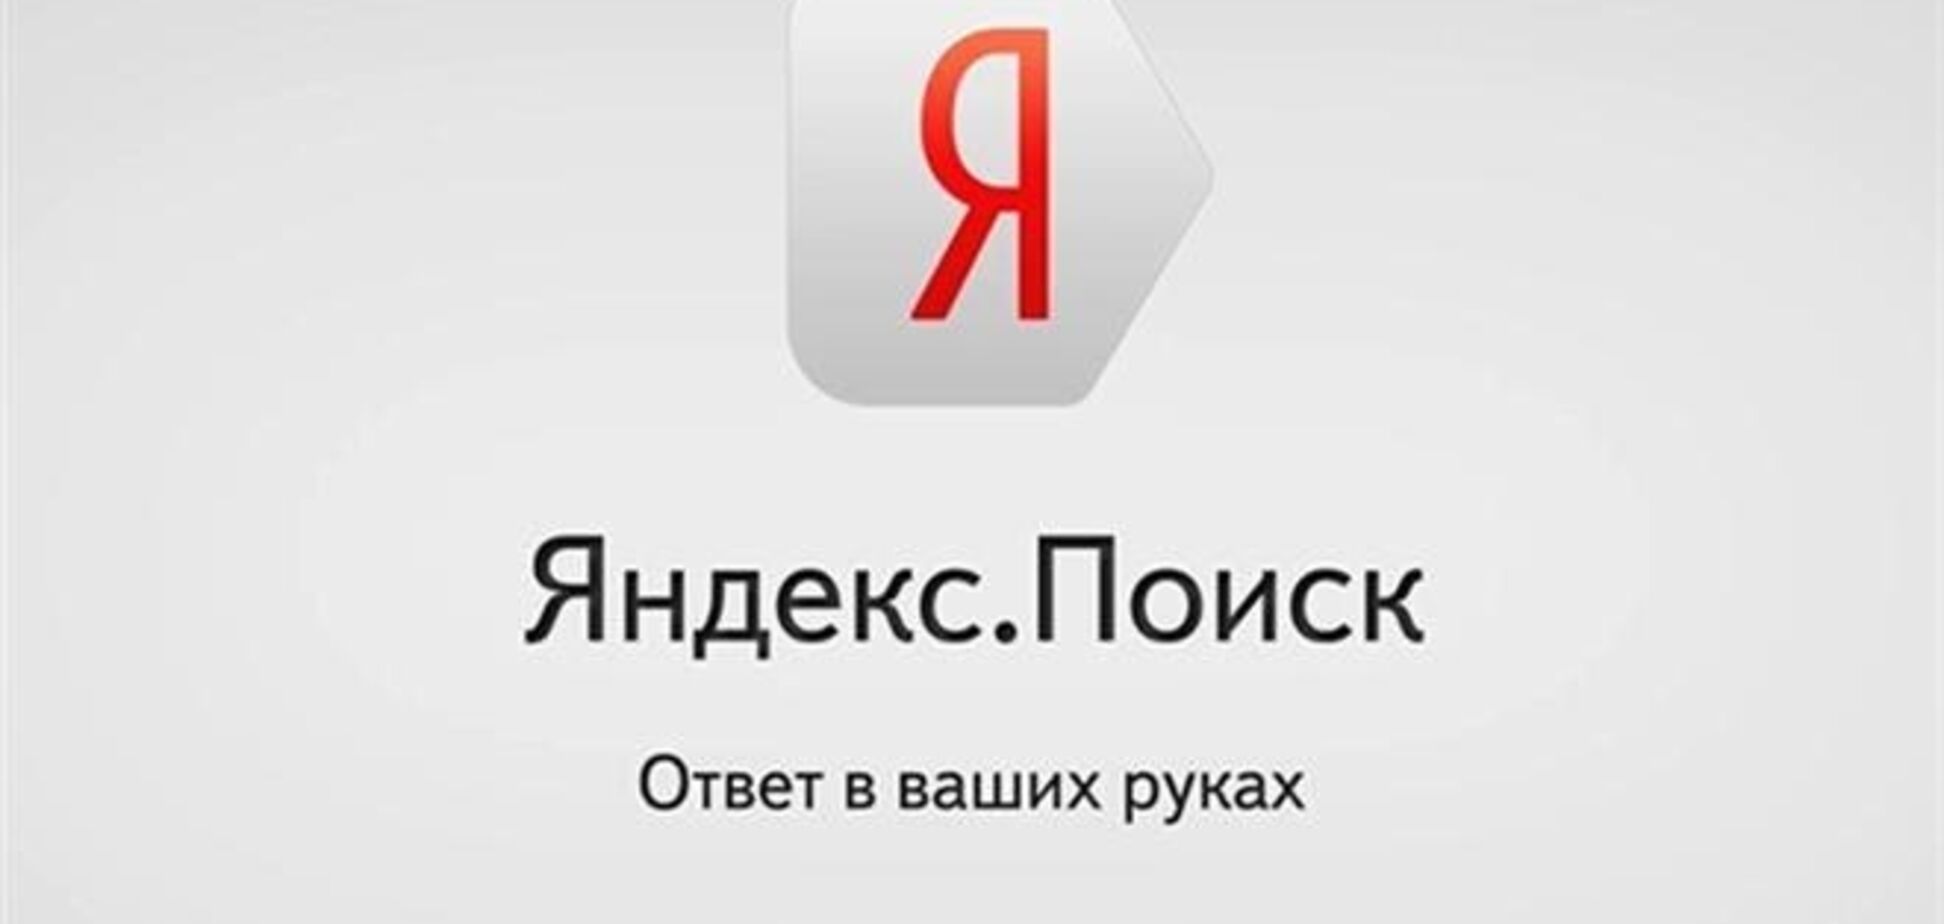 Двуликий 'Яндекс': в российской версии Крым - территория РФ, в украинской - Украины